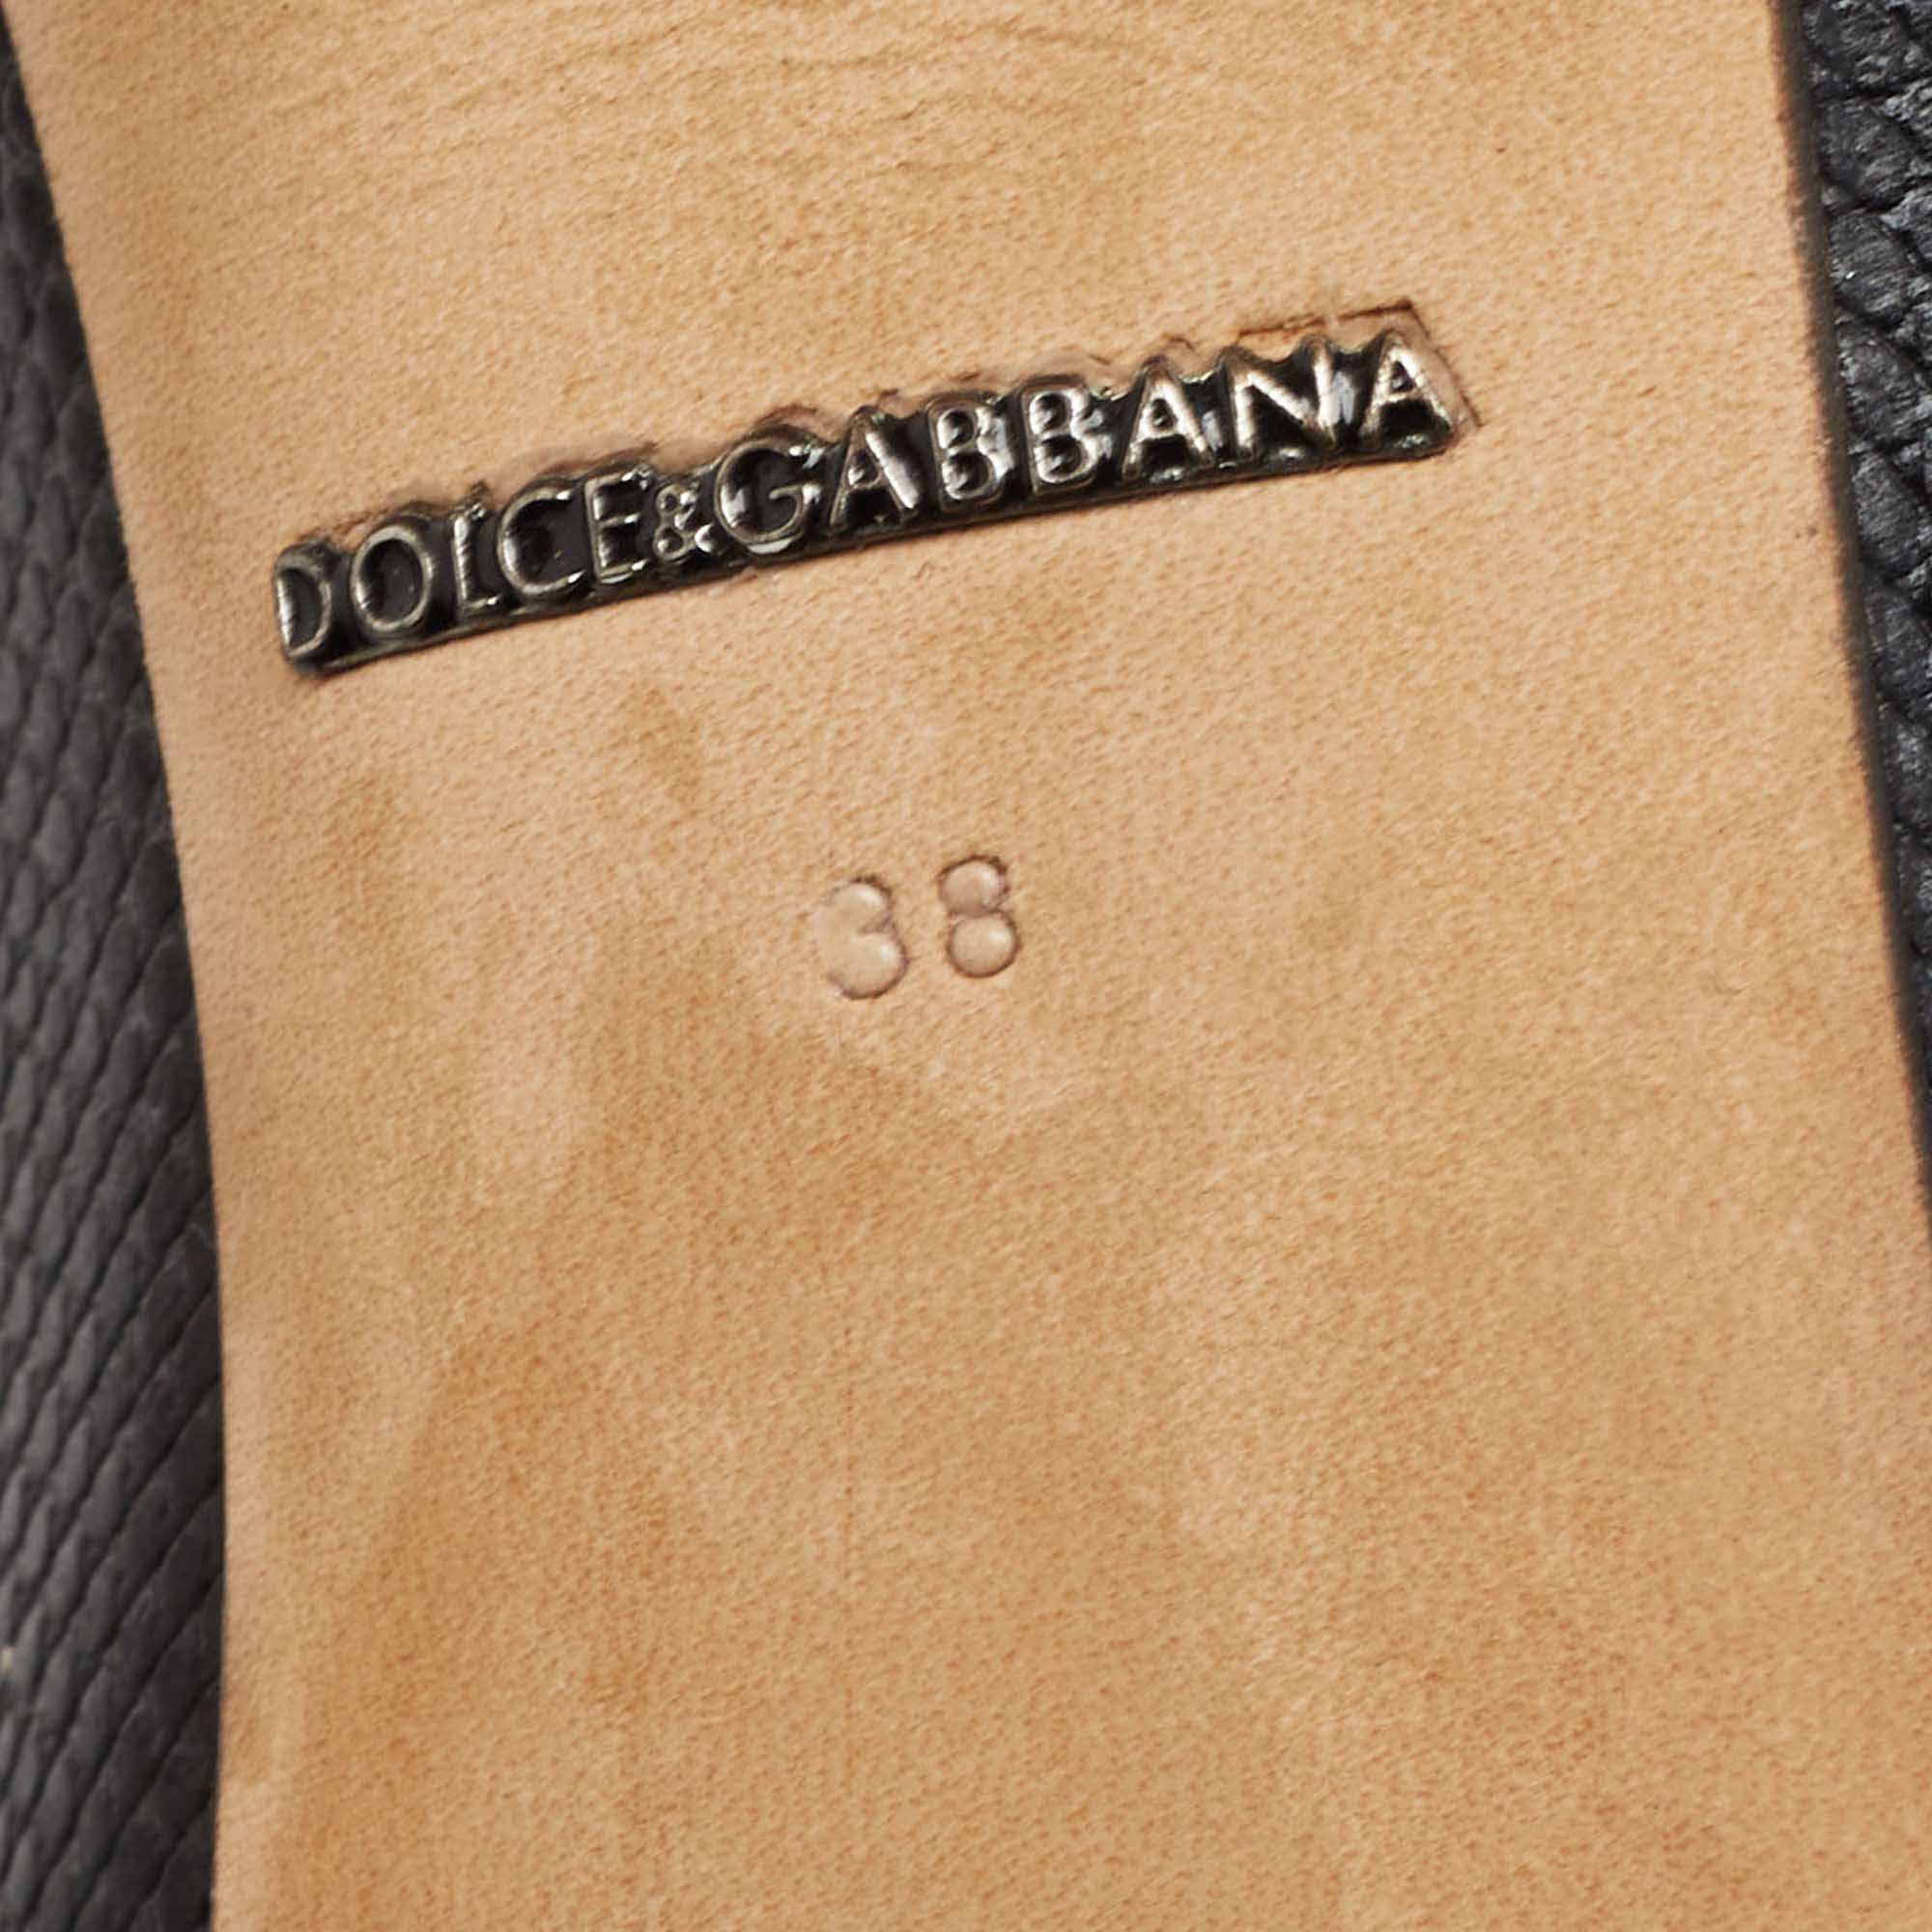 Dolce & Gabbana Black Lizard Leather Bellucci Pumps Size 38